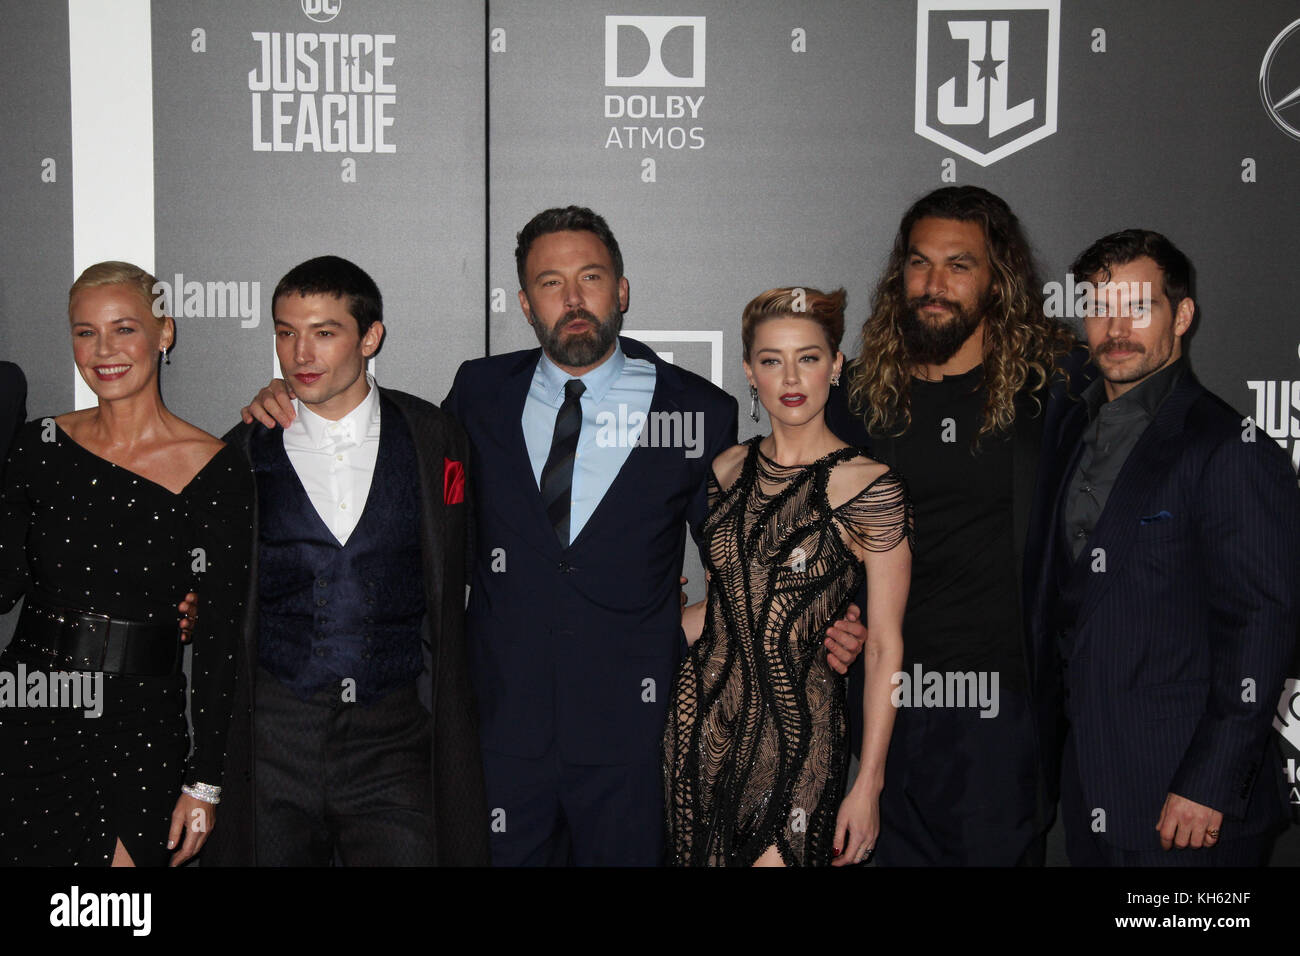 Jason Momoa Brasil on X: Jason Momoa, Ben Affleck, Amber Heard e